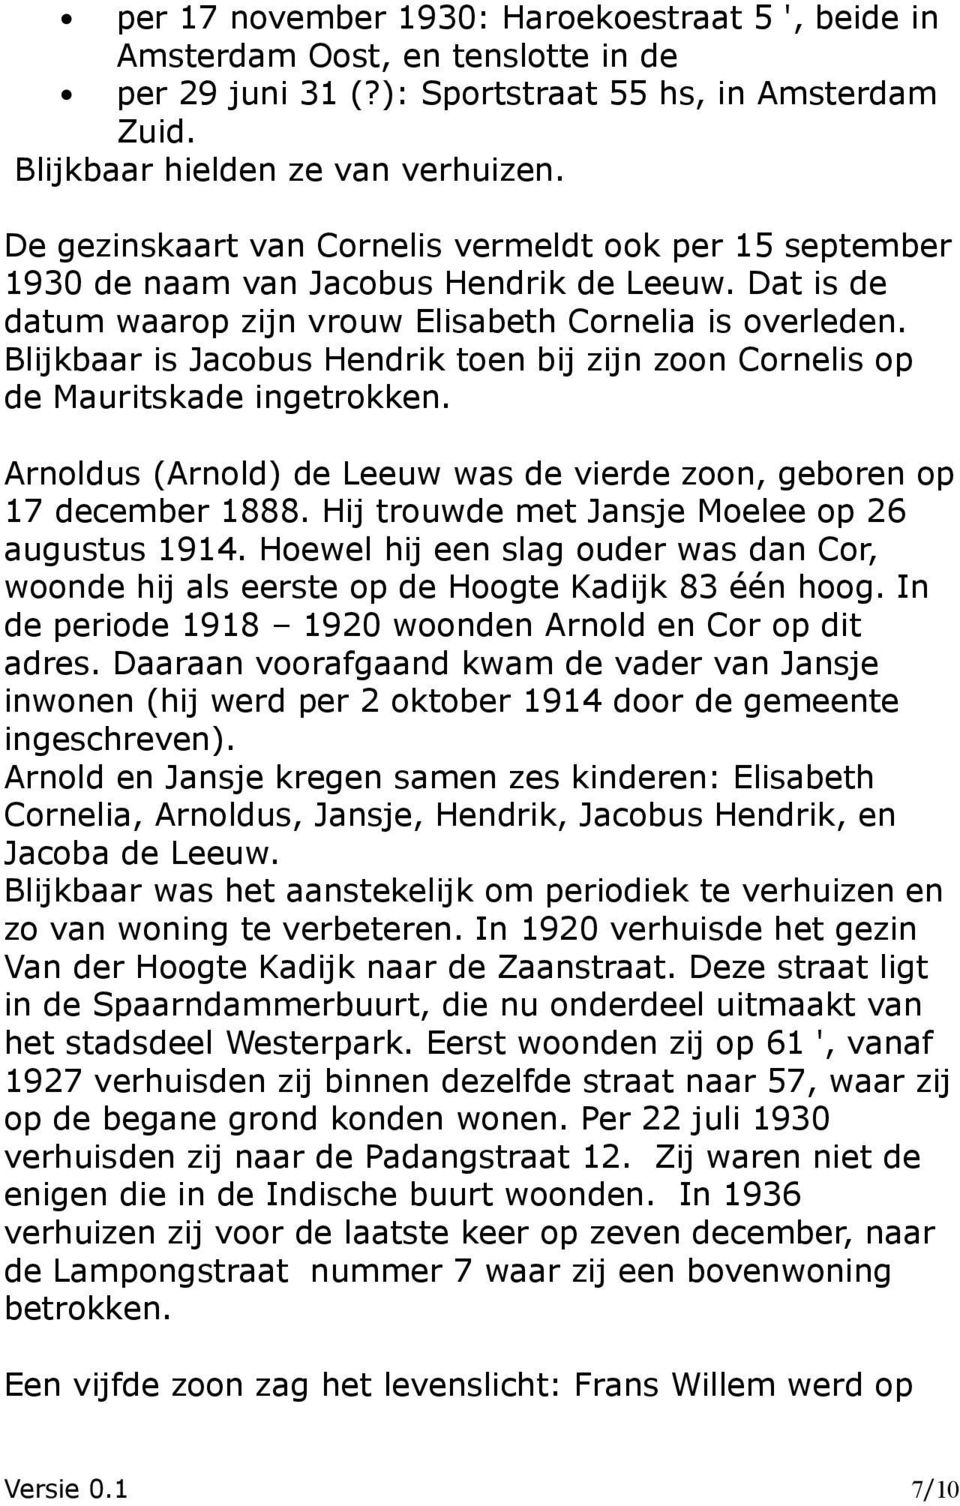 Blijkbaar is Jacobus Hendrik toen bij zijn zoon Cornelis op de Mauritskade ingetrokken. Arnoldus (Arnold) de Leeuw was de vierde zoon, geboren op 17 december 1888.